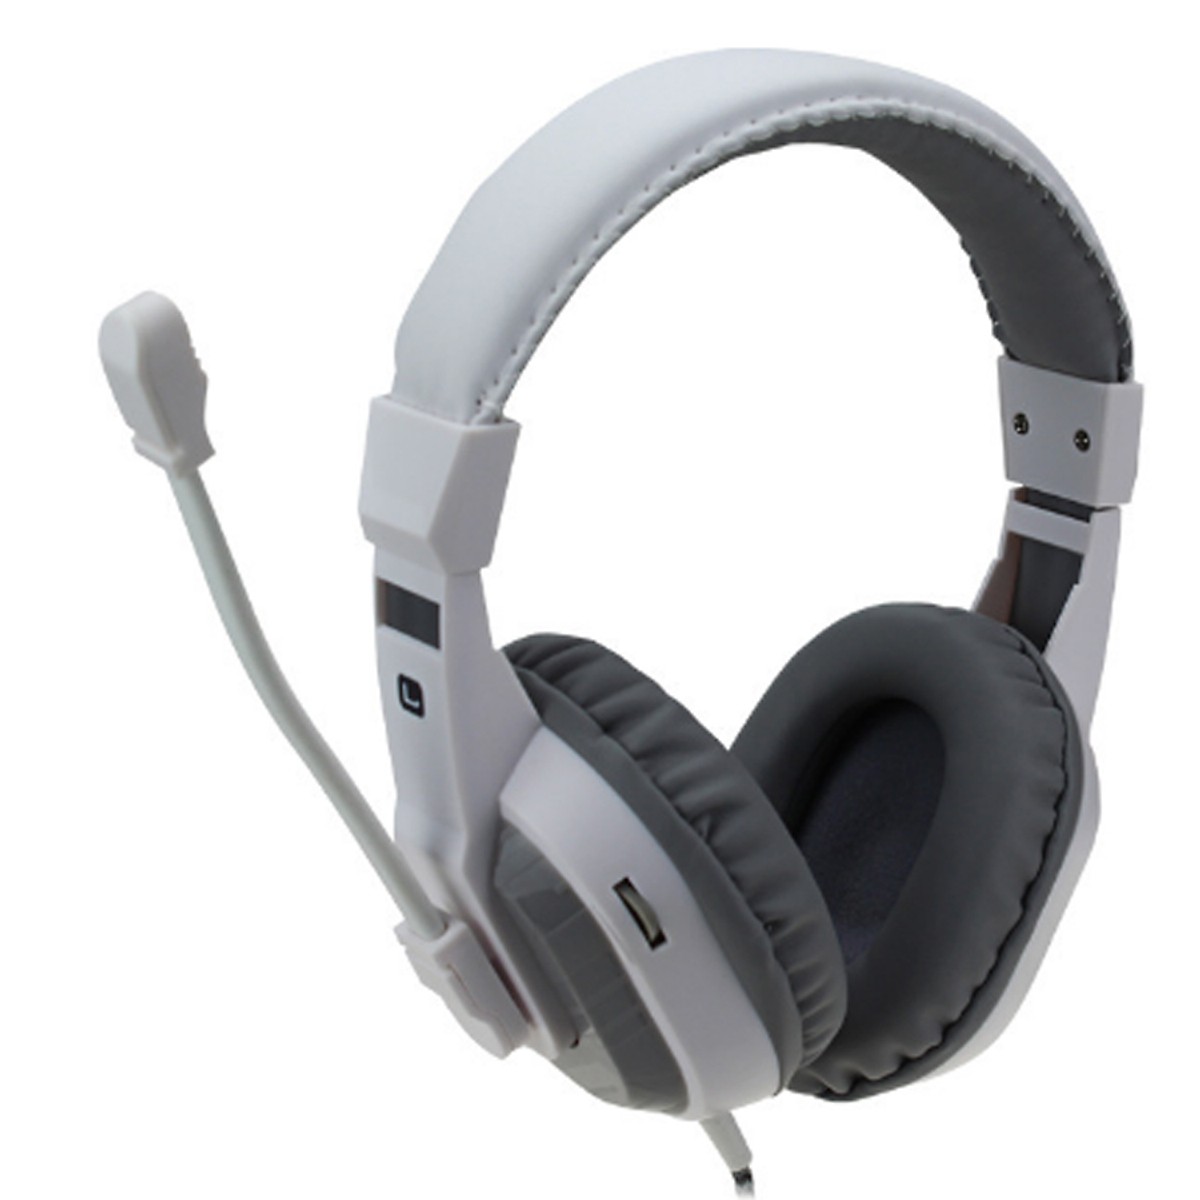 Tai nghe chụp tai CT-800 kèm mic đàm thoại dành cho Game thủ chống nhiễu, chống ồn tốt + Tặng hộp quẹt bật lửa bay mặt ma cao cấp (màu ngẫu nhiên)